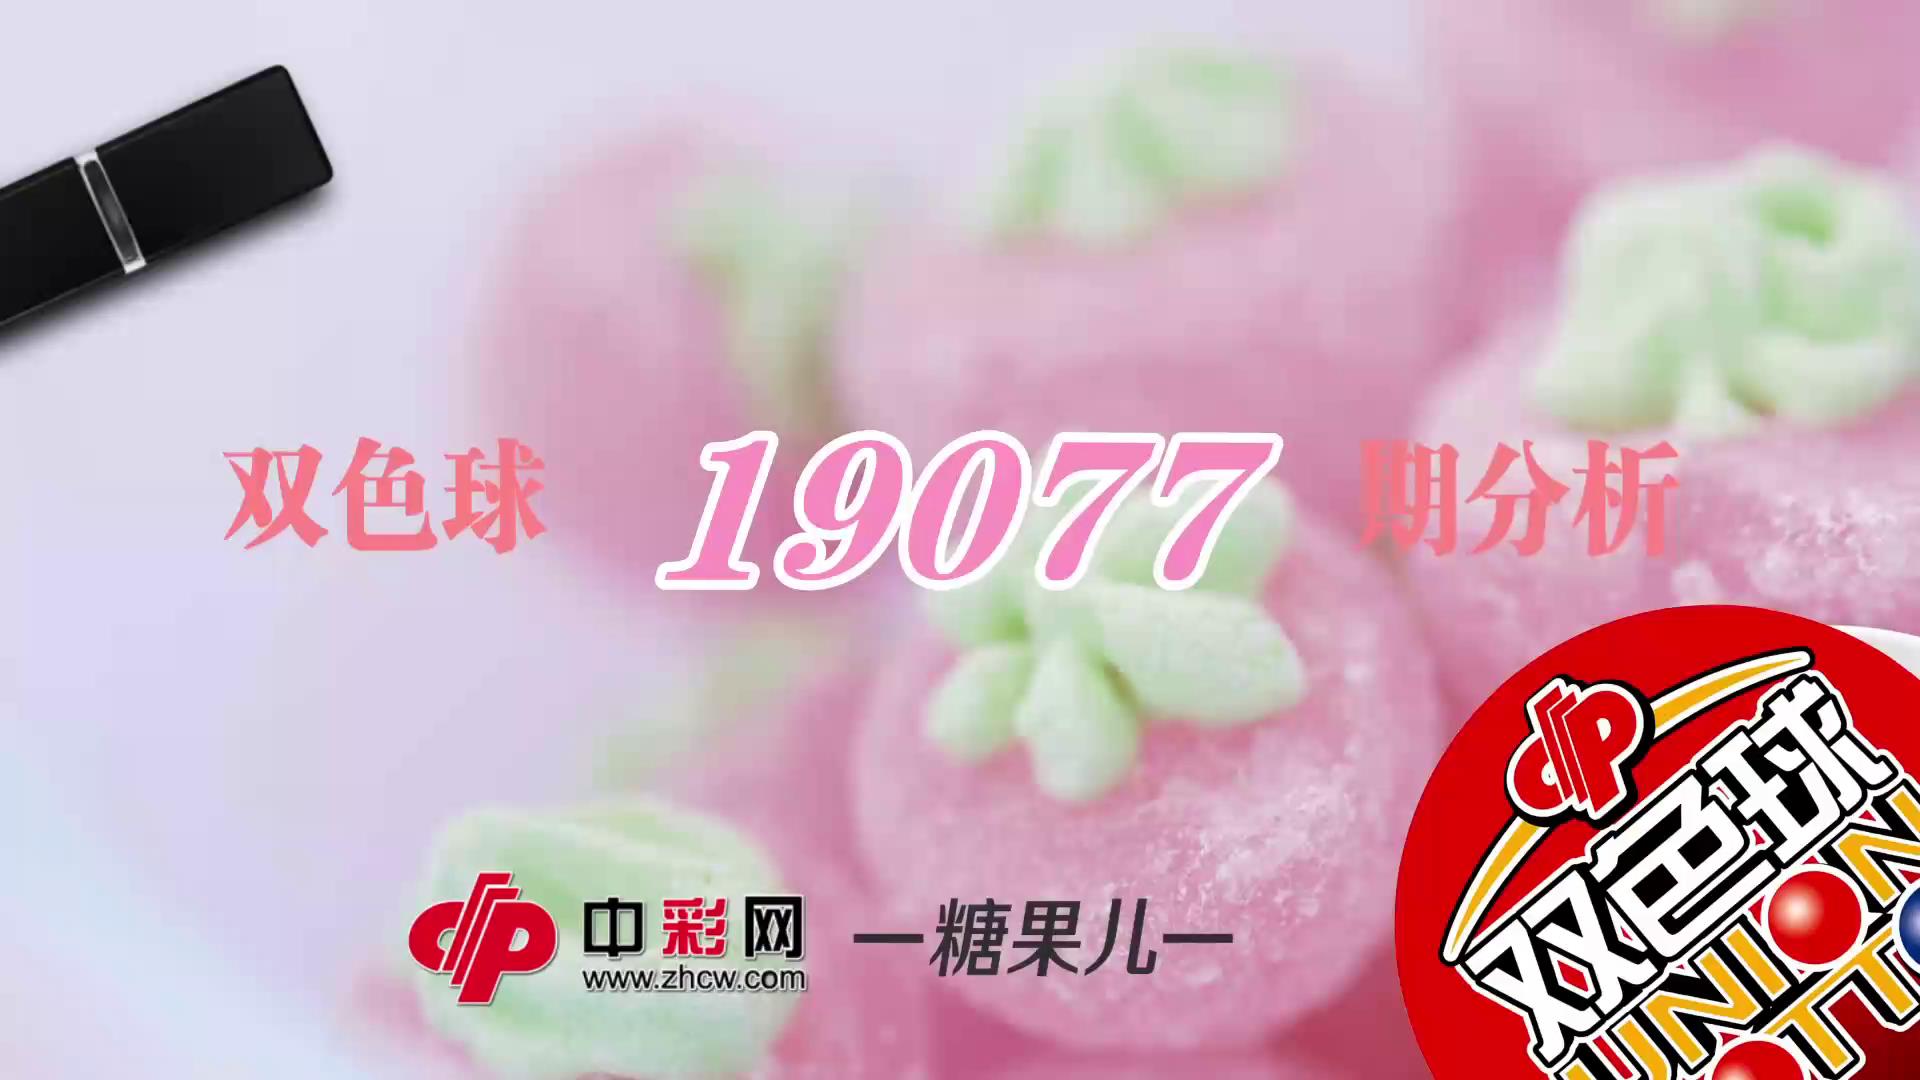 【中彩视频】糖果儿双色球第19077期